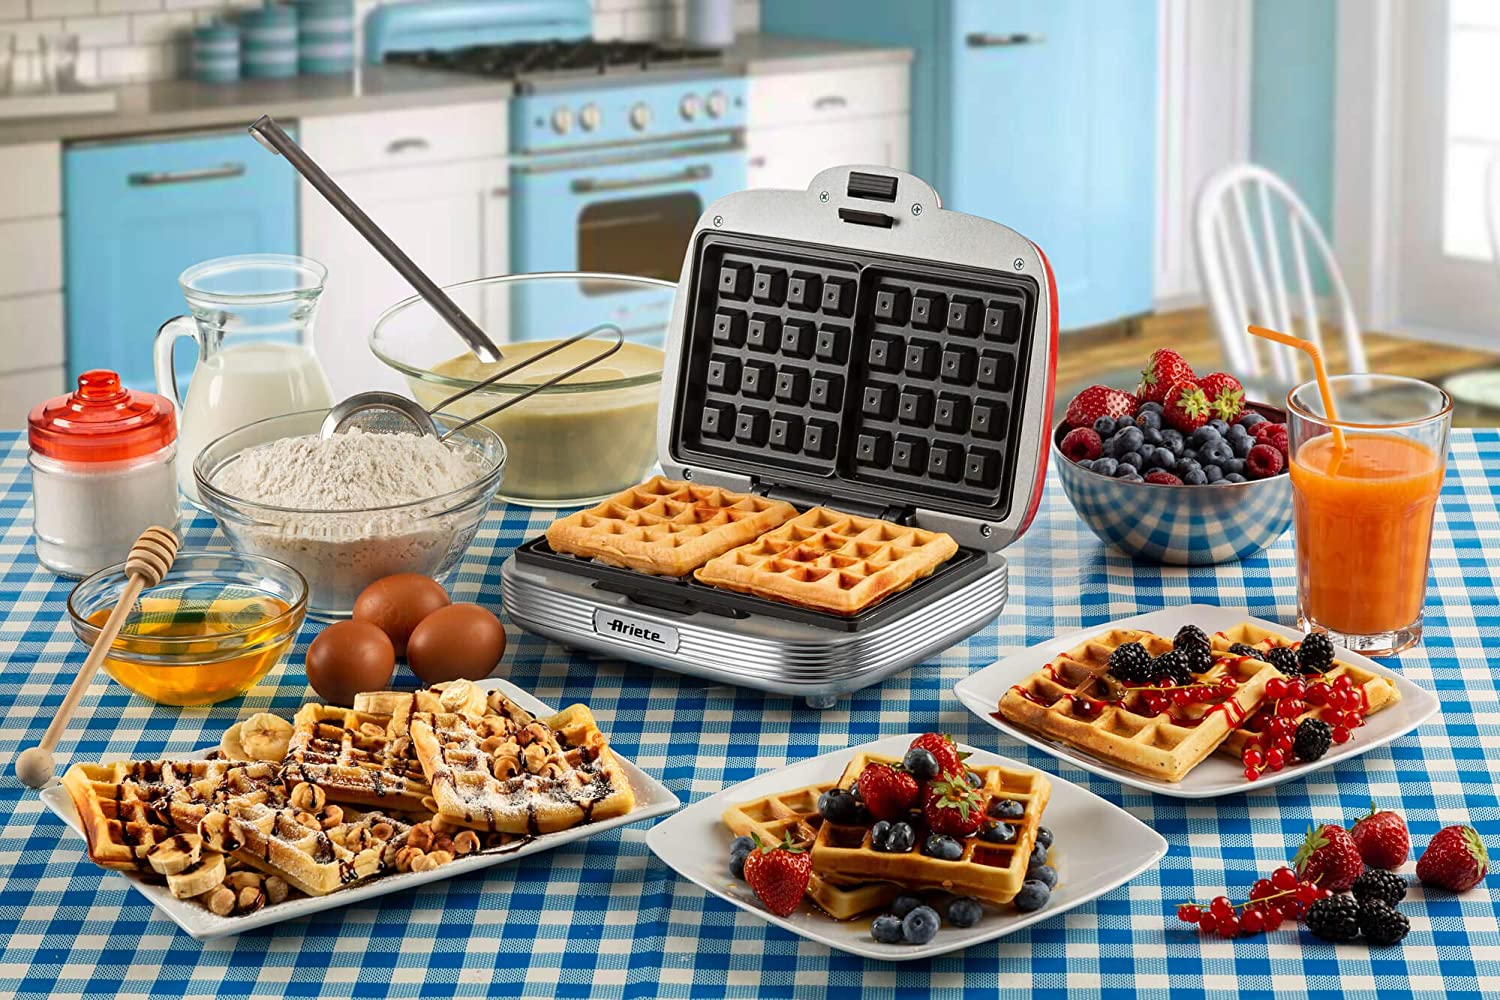 Consigli24  Prepara dolci colazioni e merende squisite con le migliori  macchine per waffle